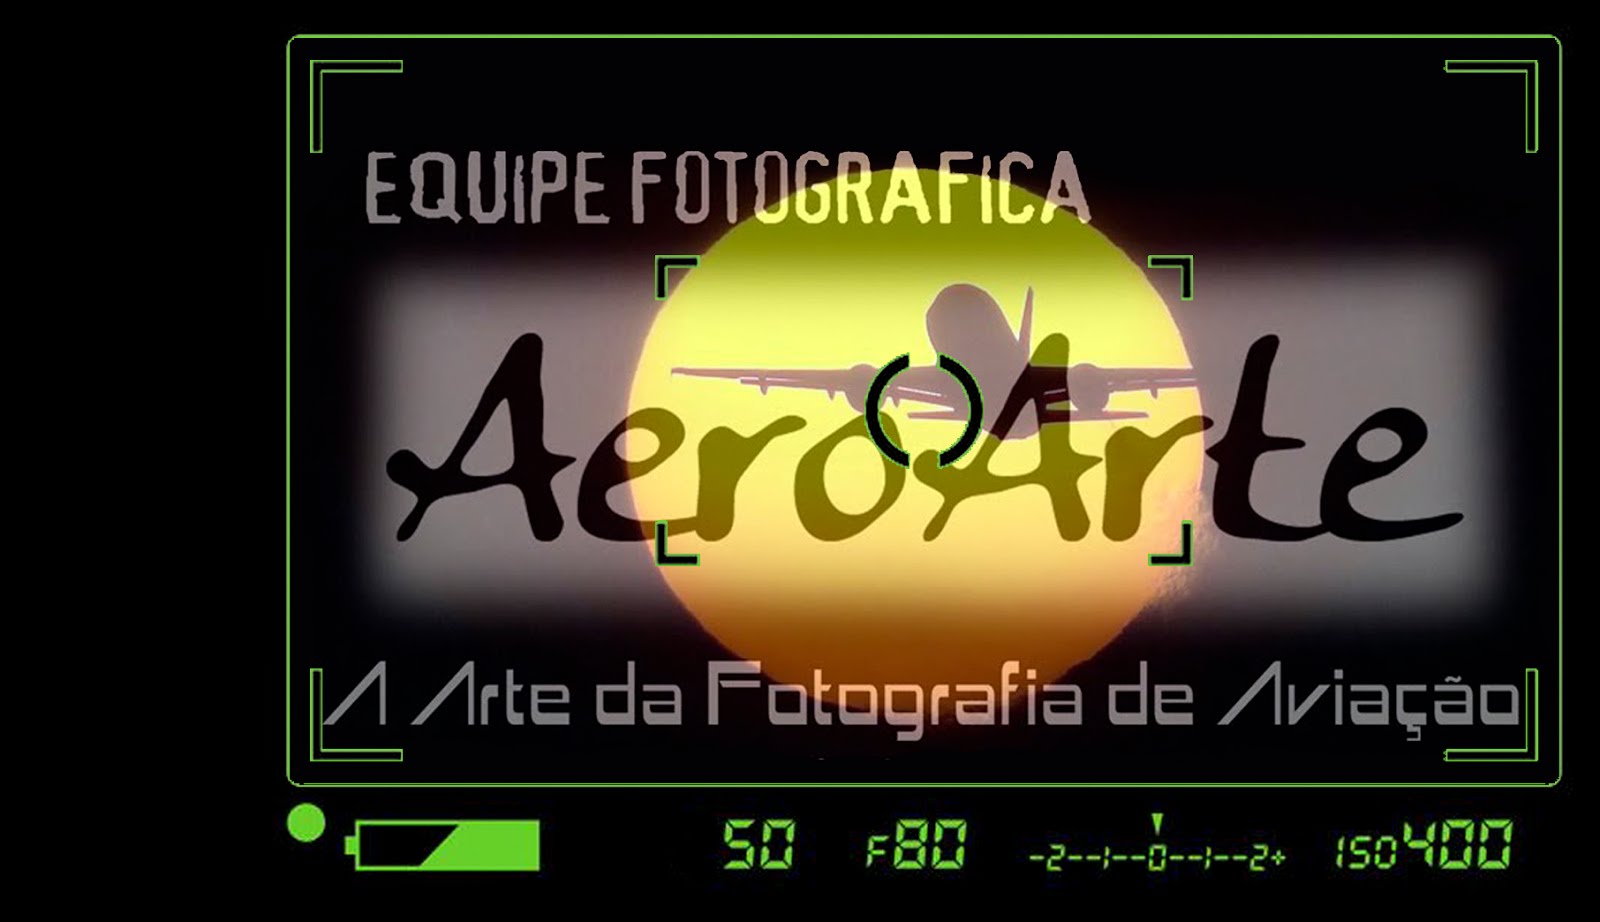 Equipe Fotográfica AeroArte